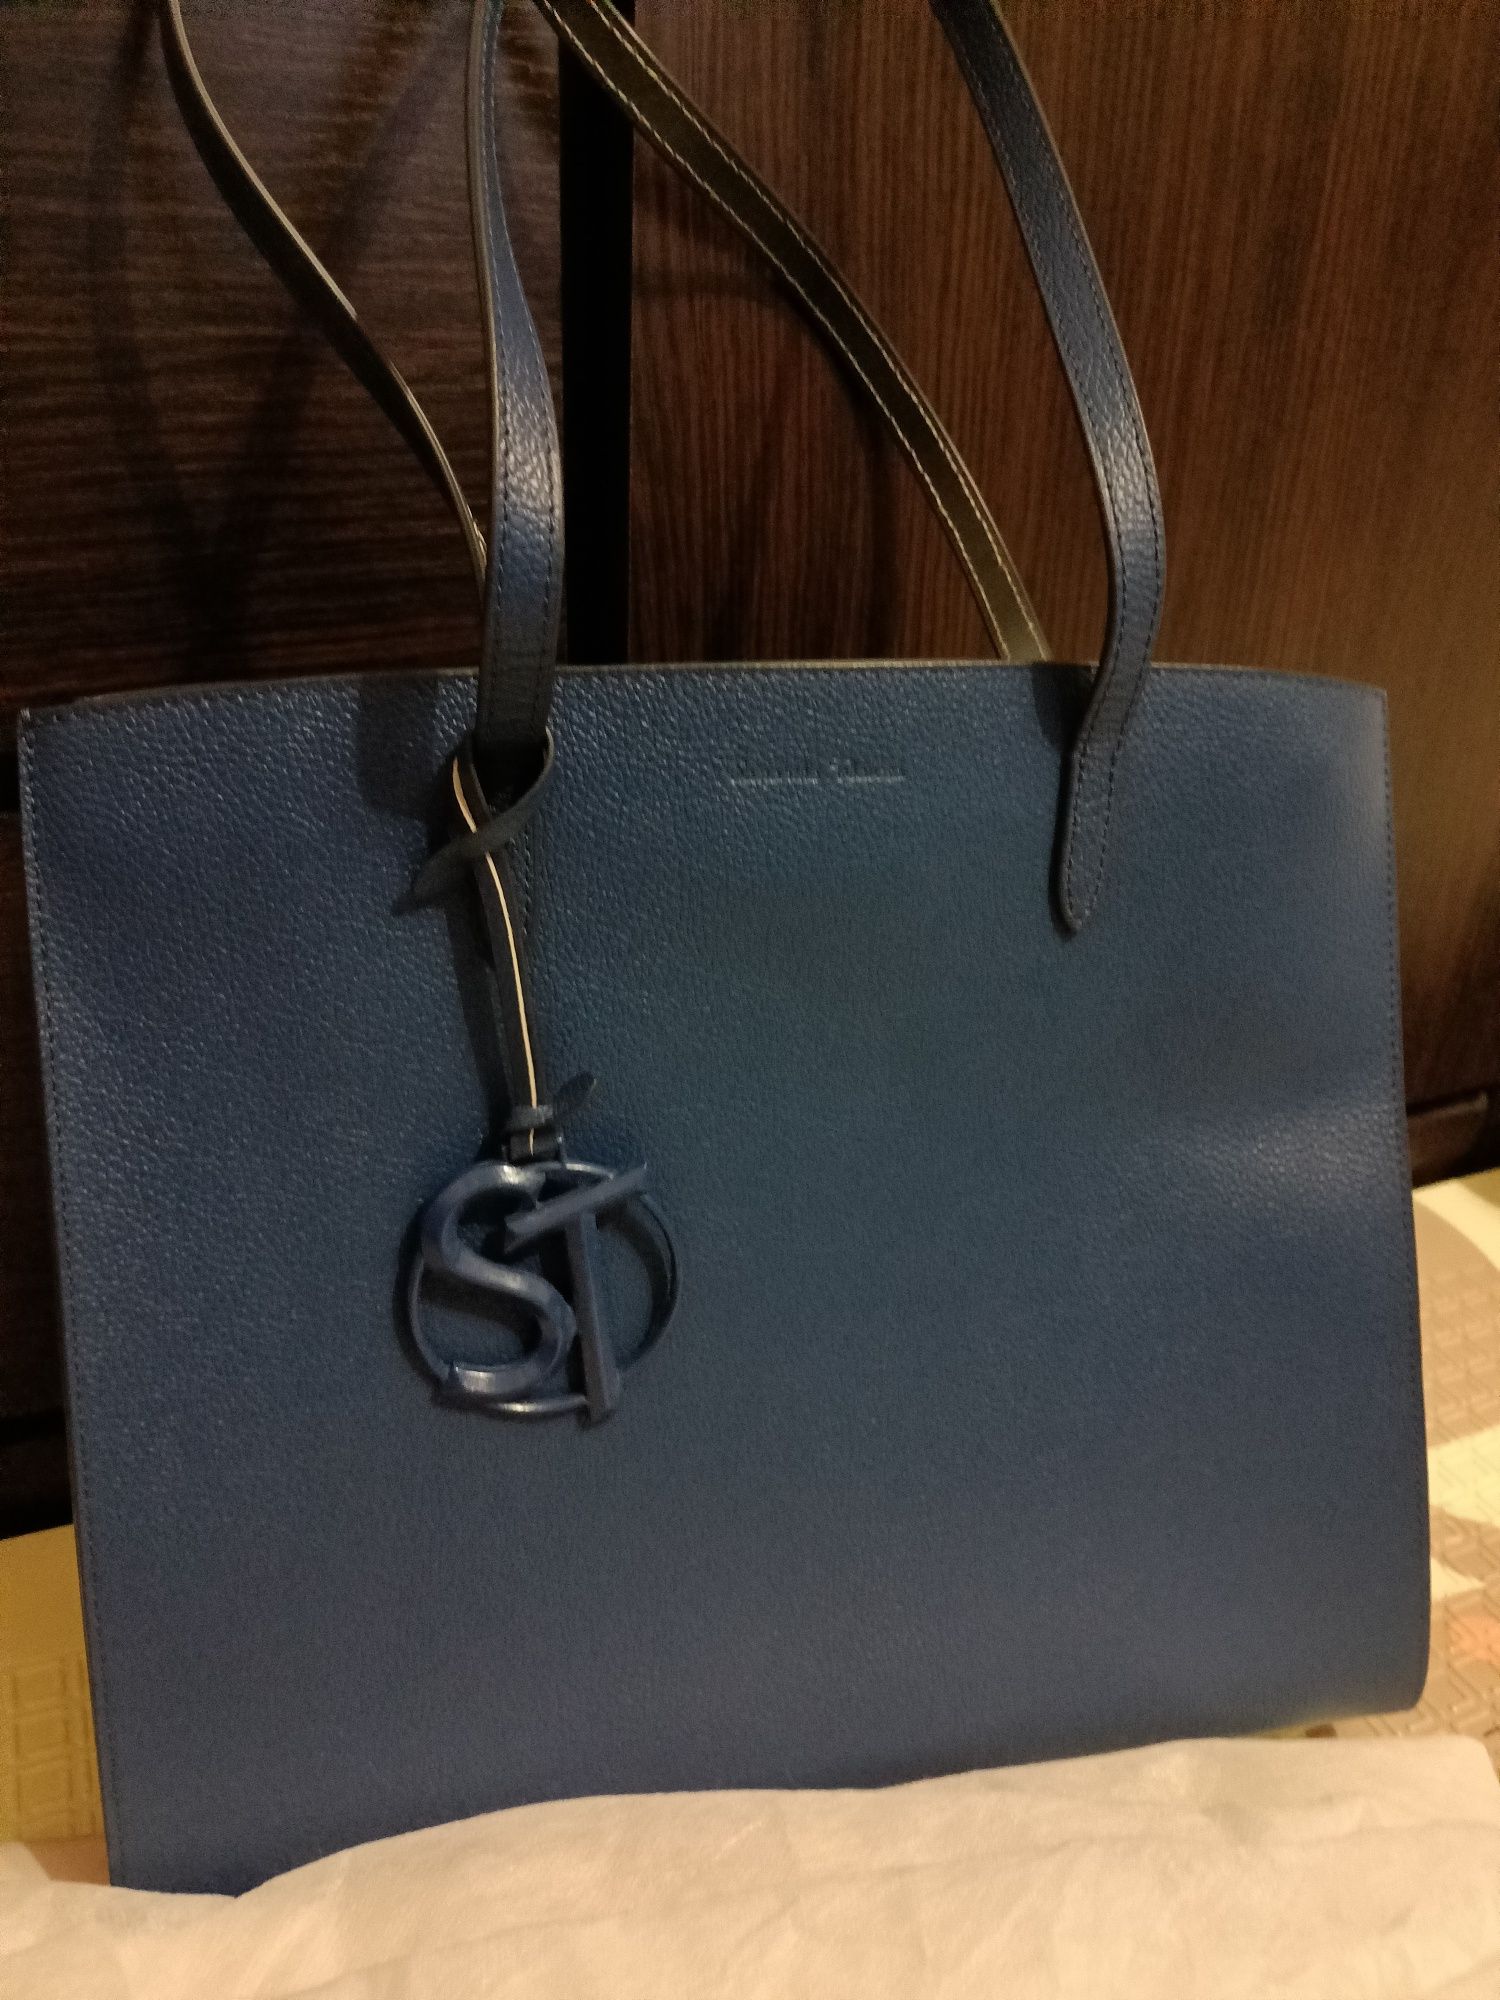 Шкіряна сумка від японського бренду Samantha Thavasa